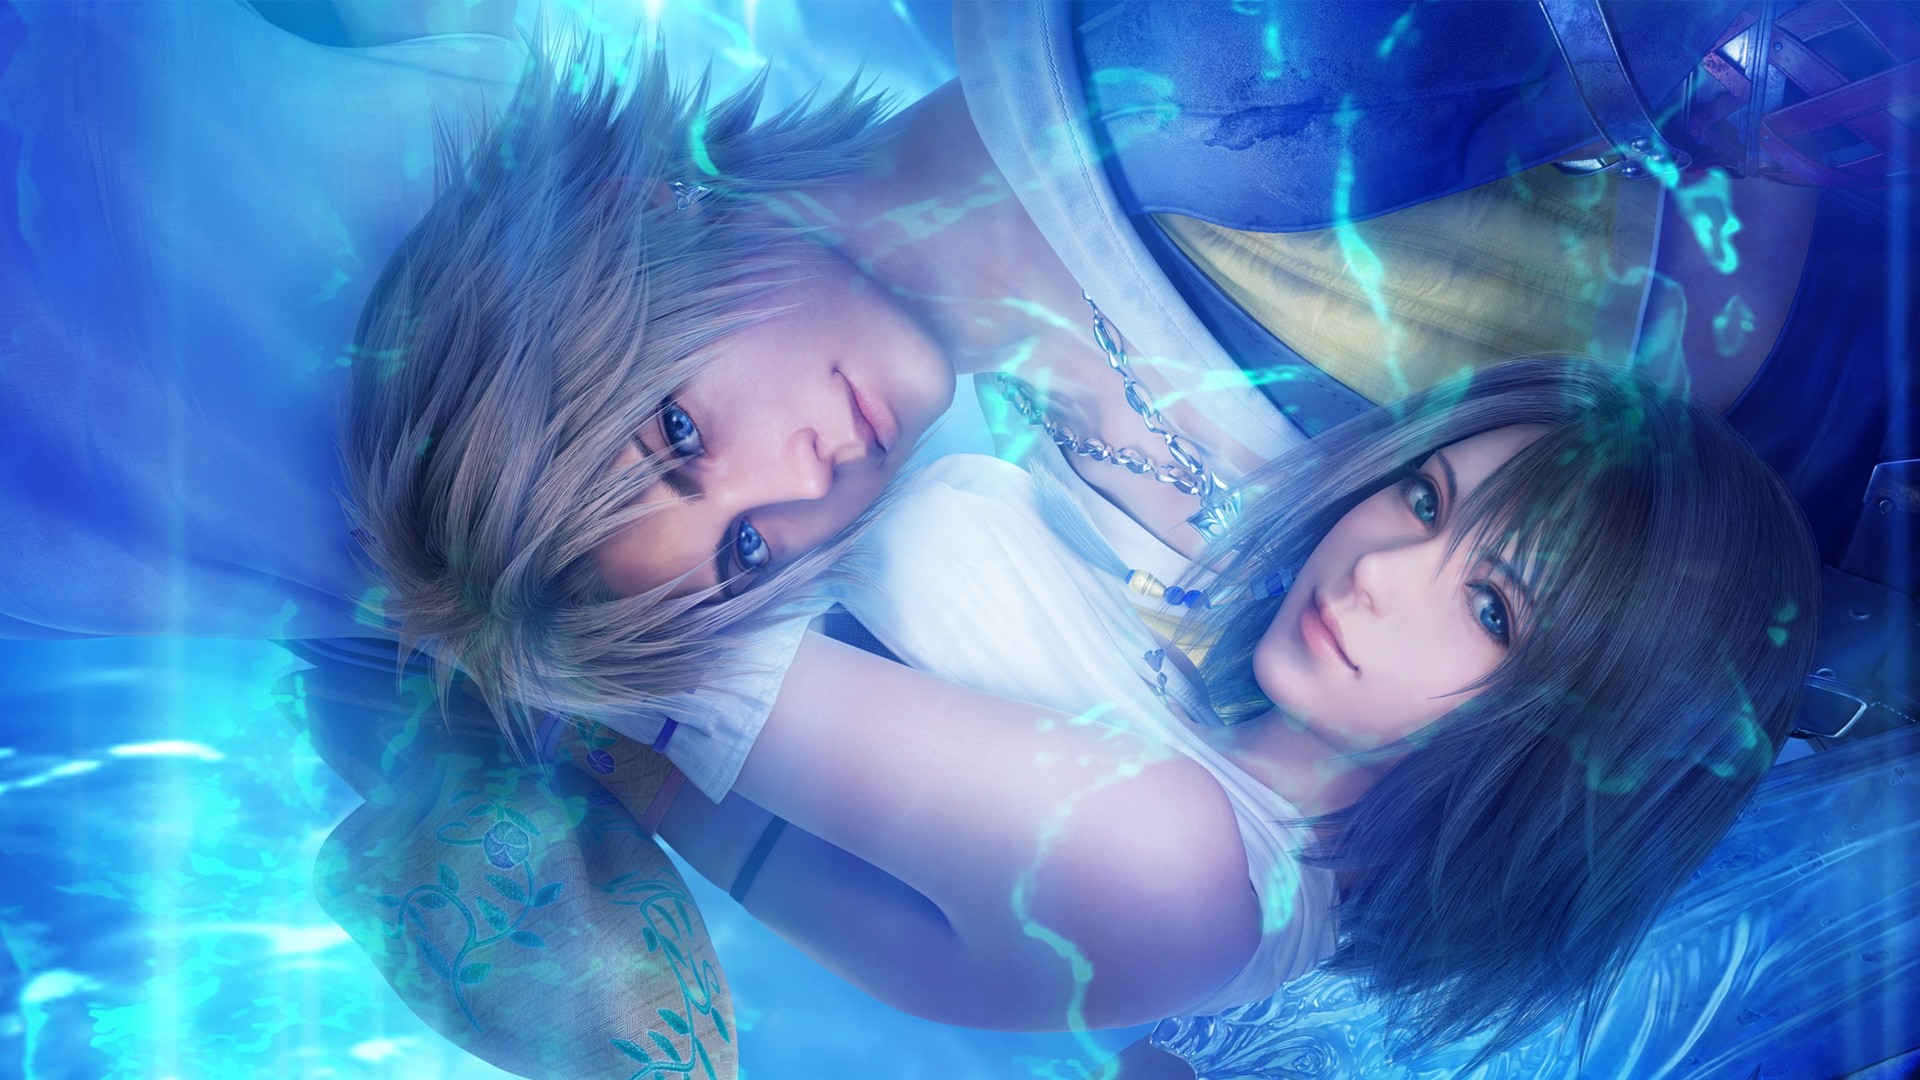 Final Fantasy 10 pode ganhar remake em 2026 